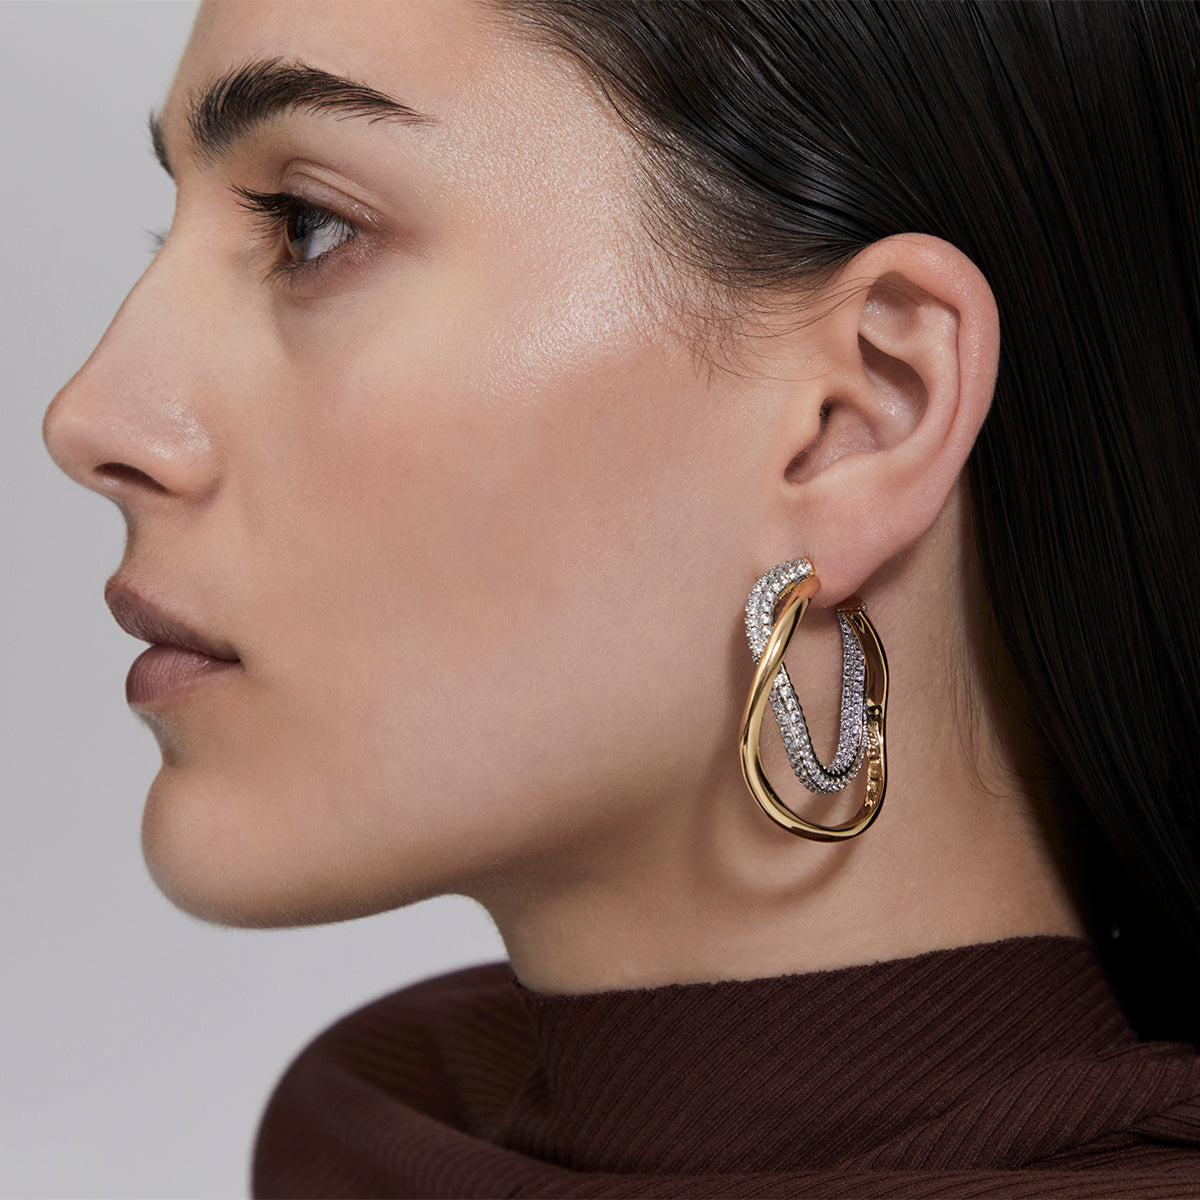 Basinger-earrings-Amber-Sceats-1.jpg